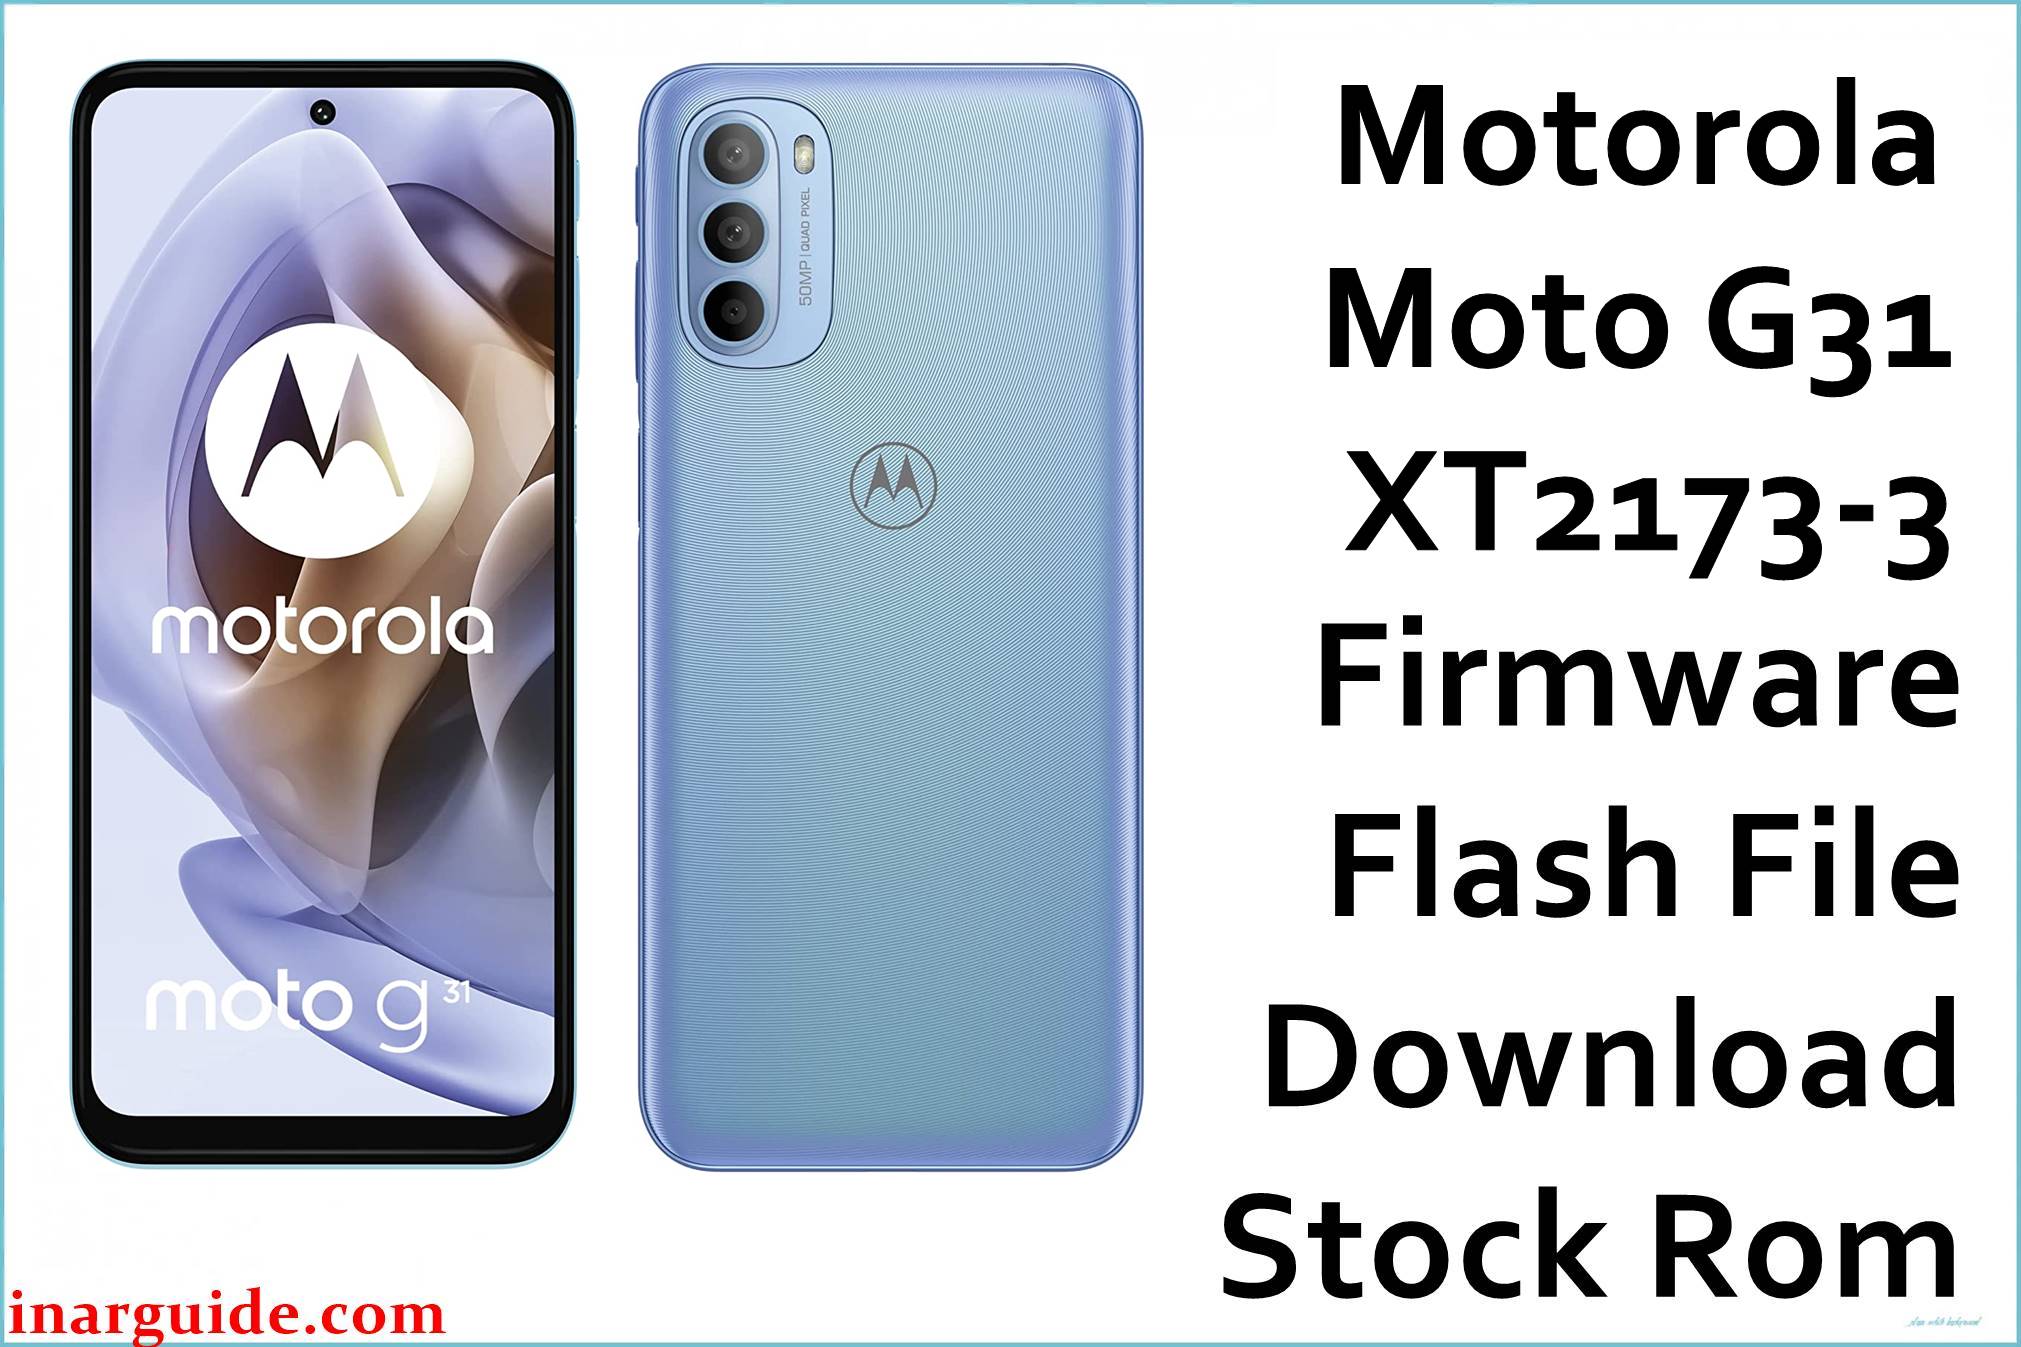 Motorola Moto G31 XT2173-3